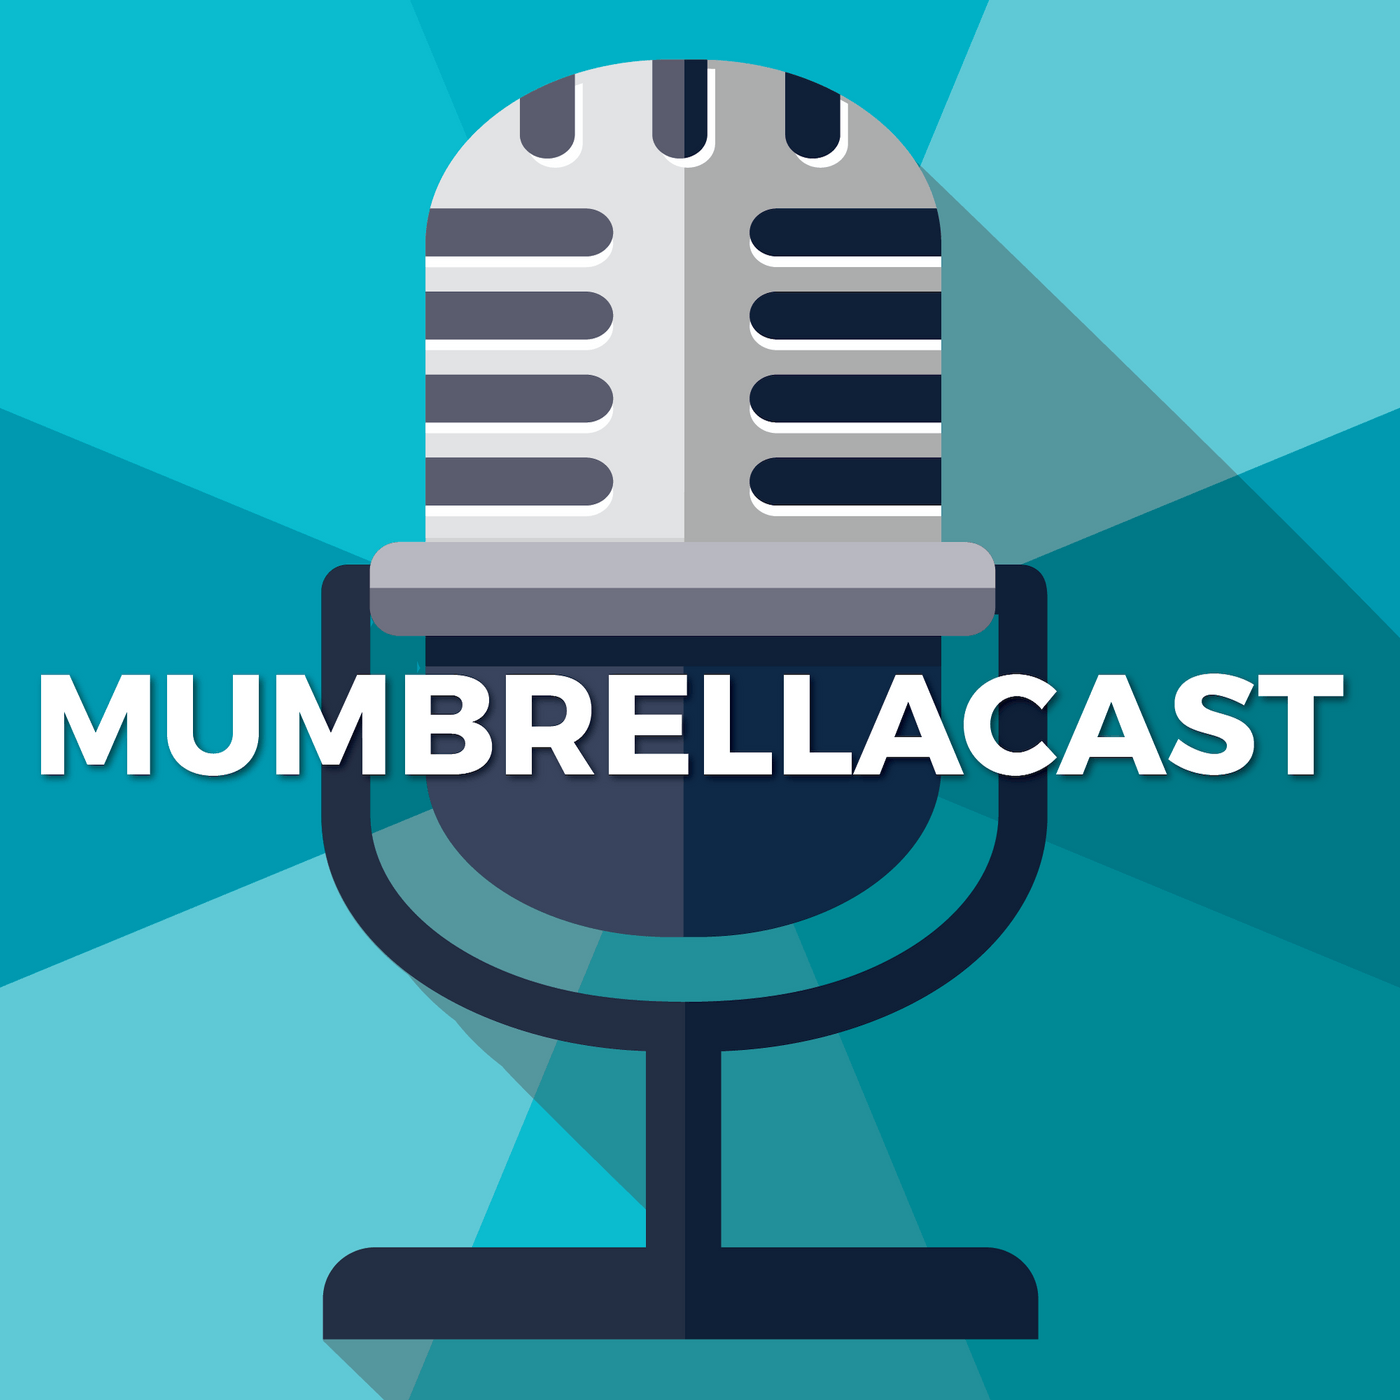 Mumbrella Podcast Enters ITunes Top 5